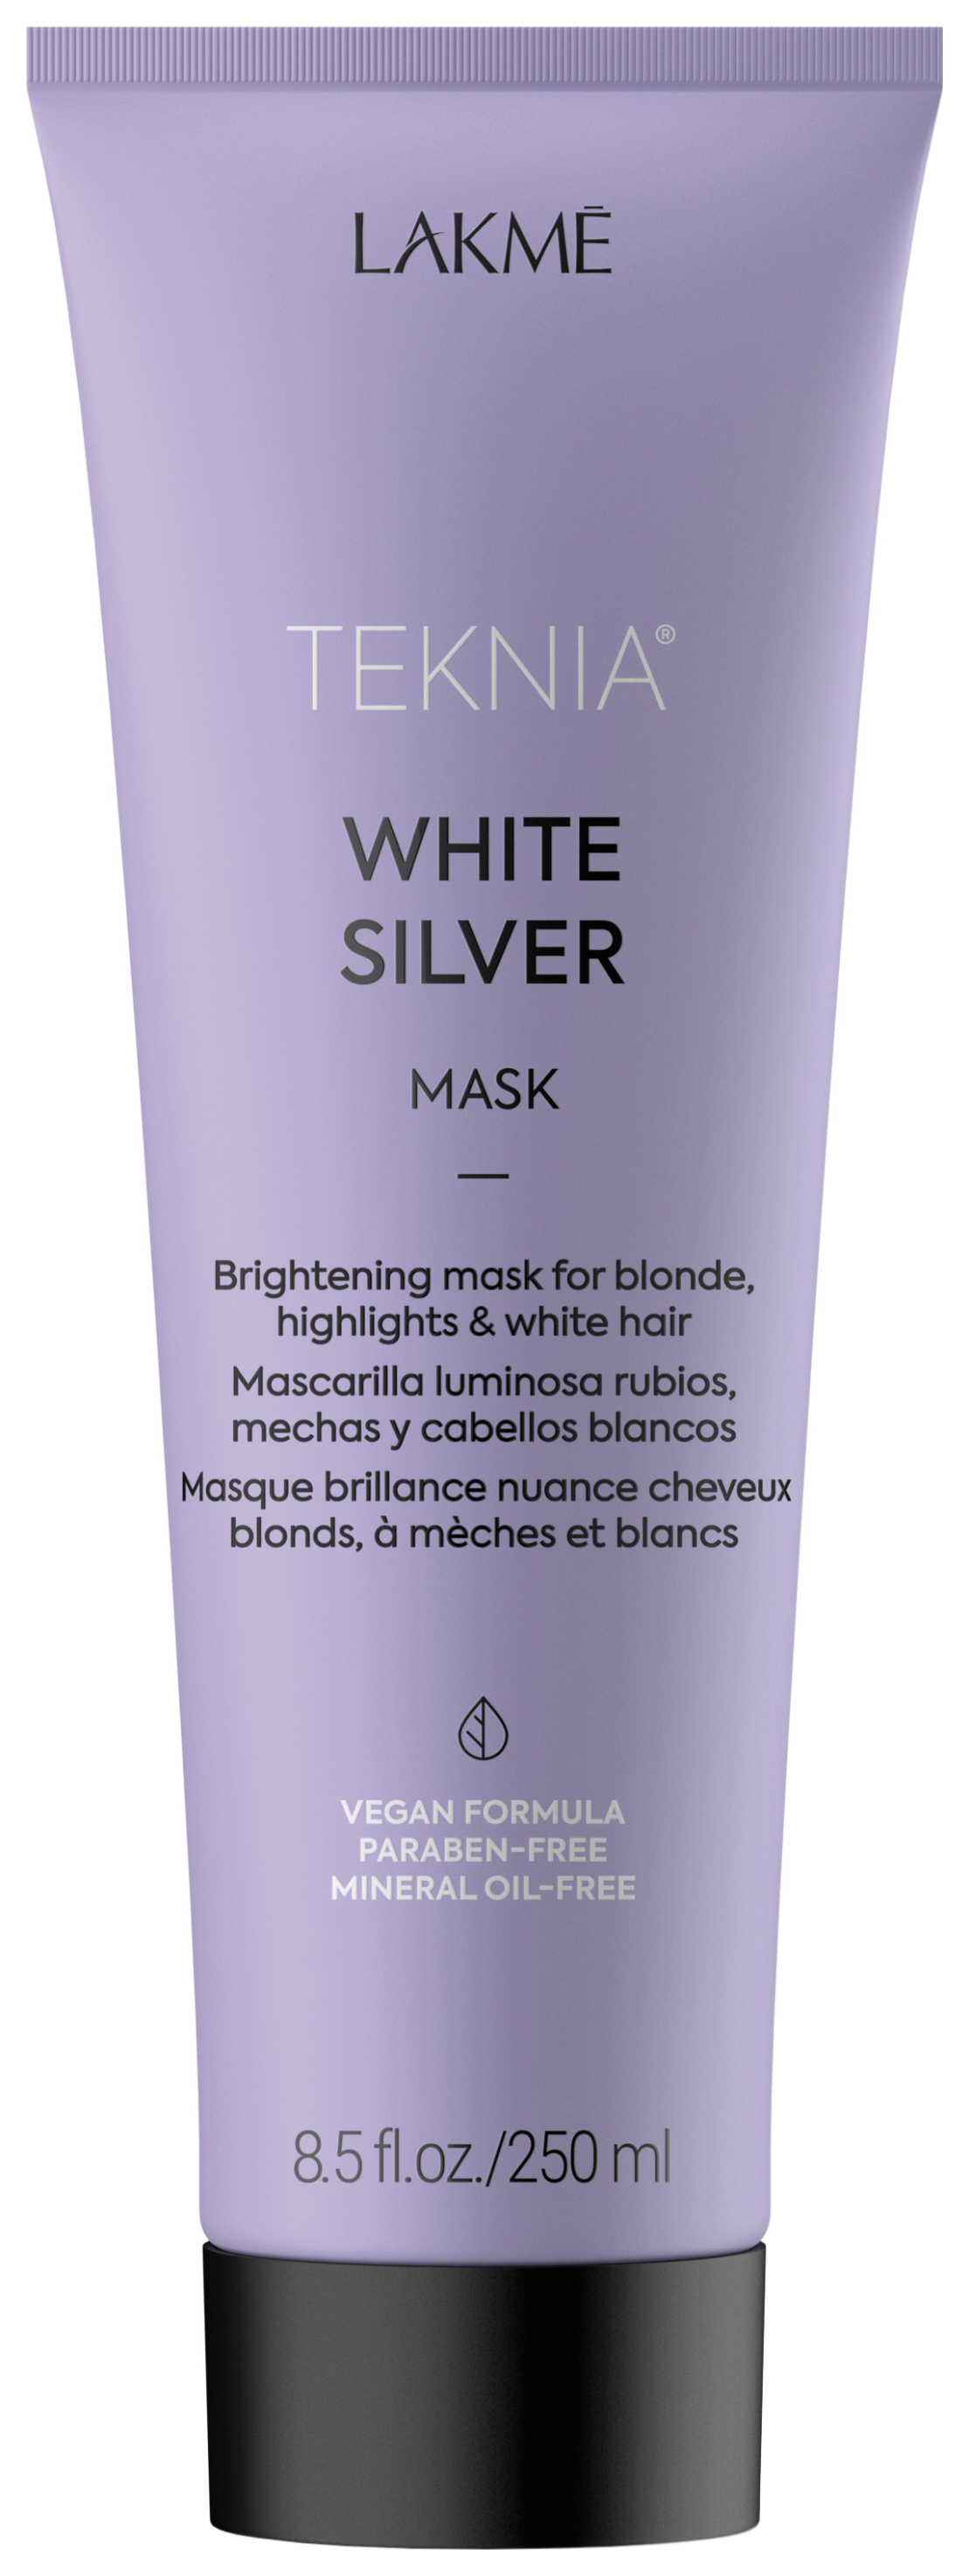 Маска для волос Lakme White Silver, 250 мл маска tefia карамельная для светлых волос профессиональная 250мл линия myblond